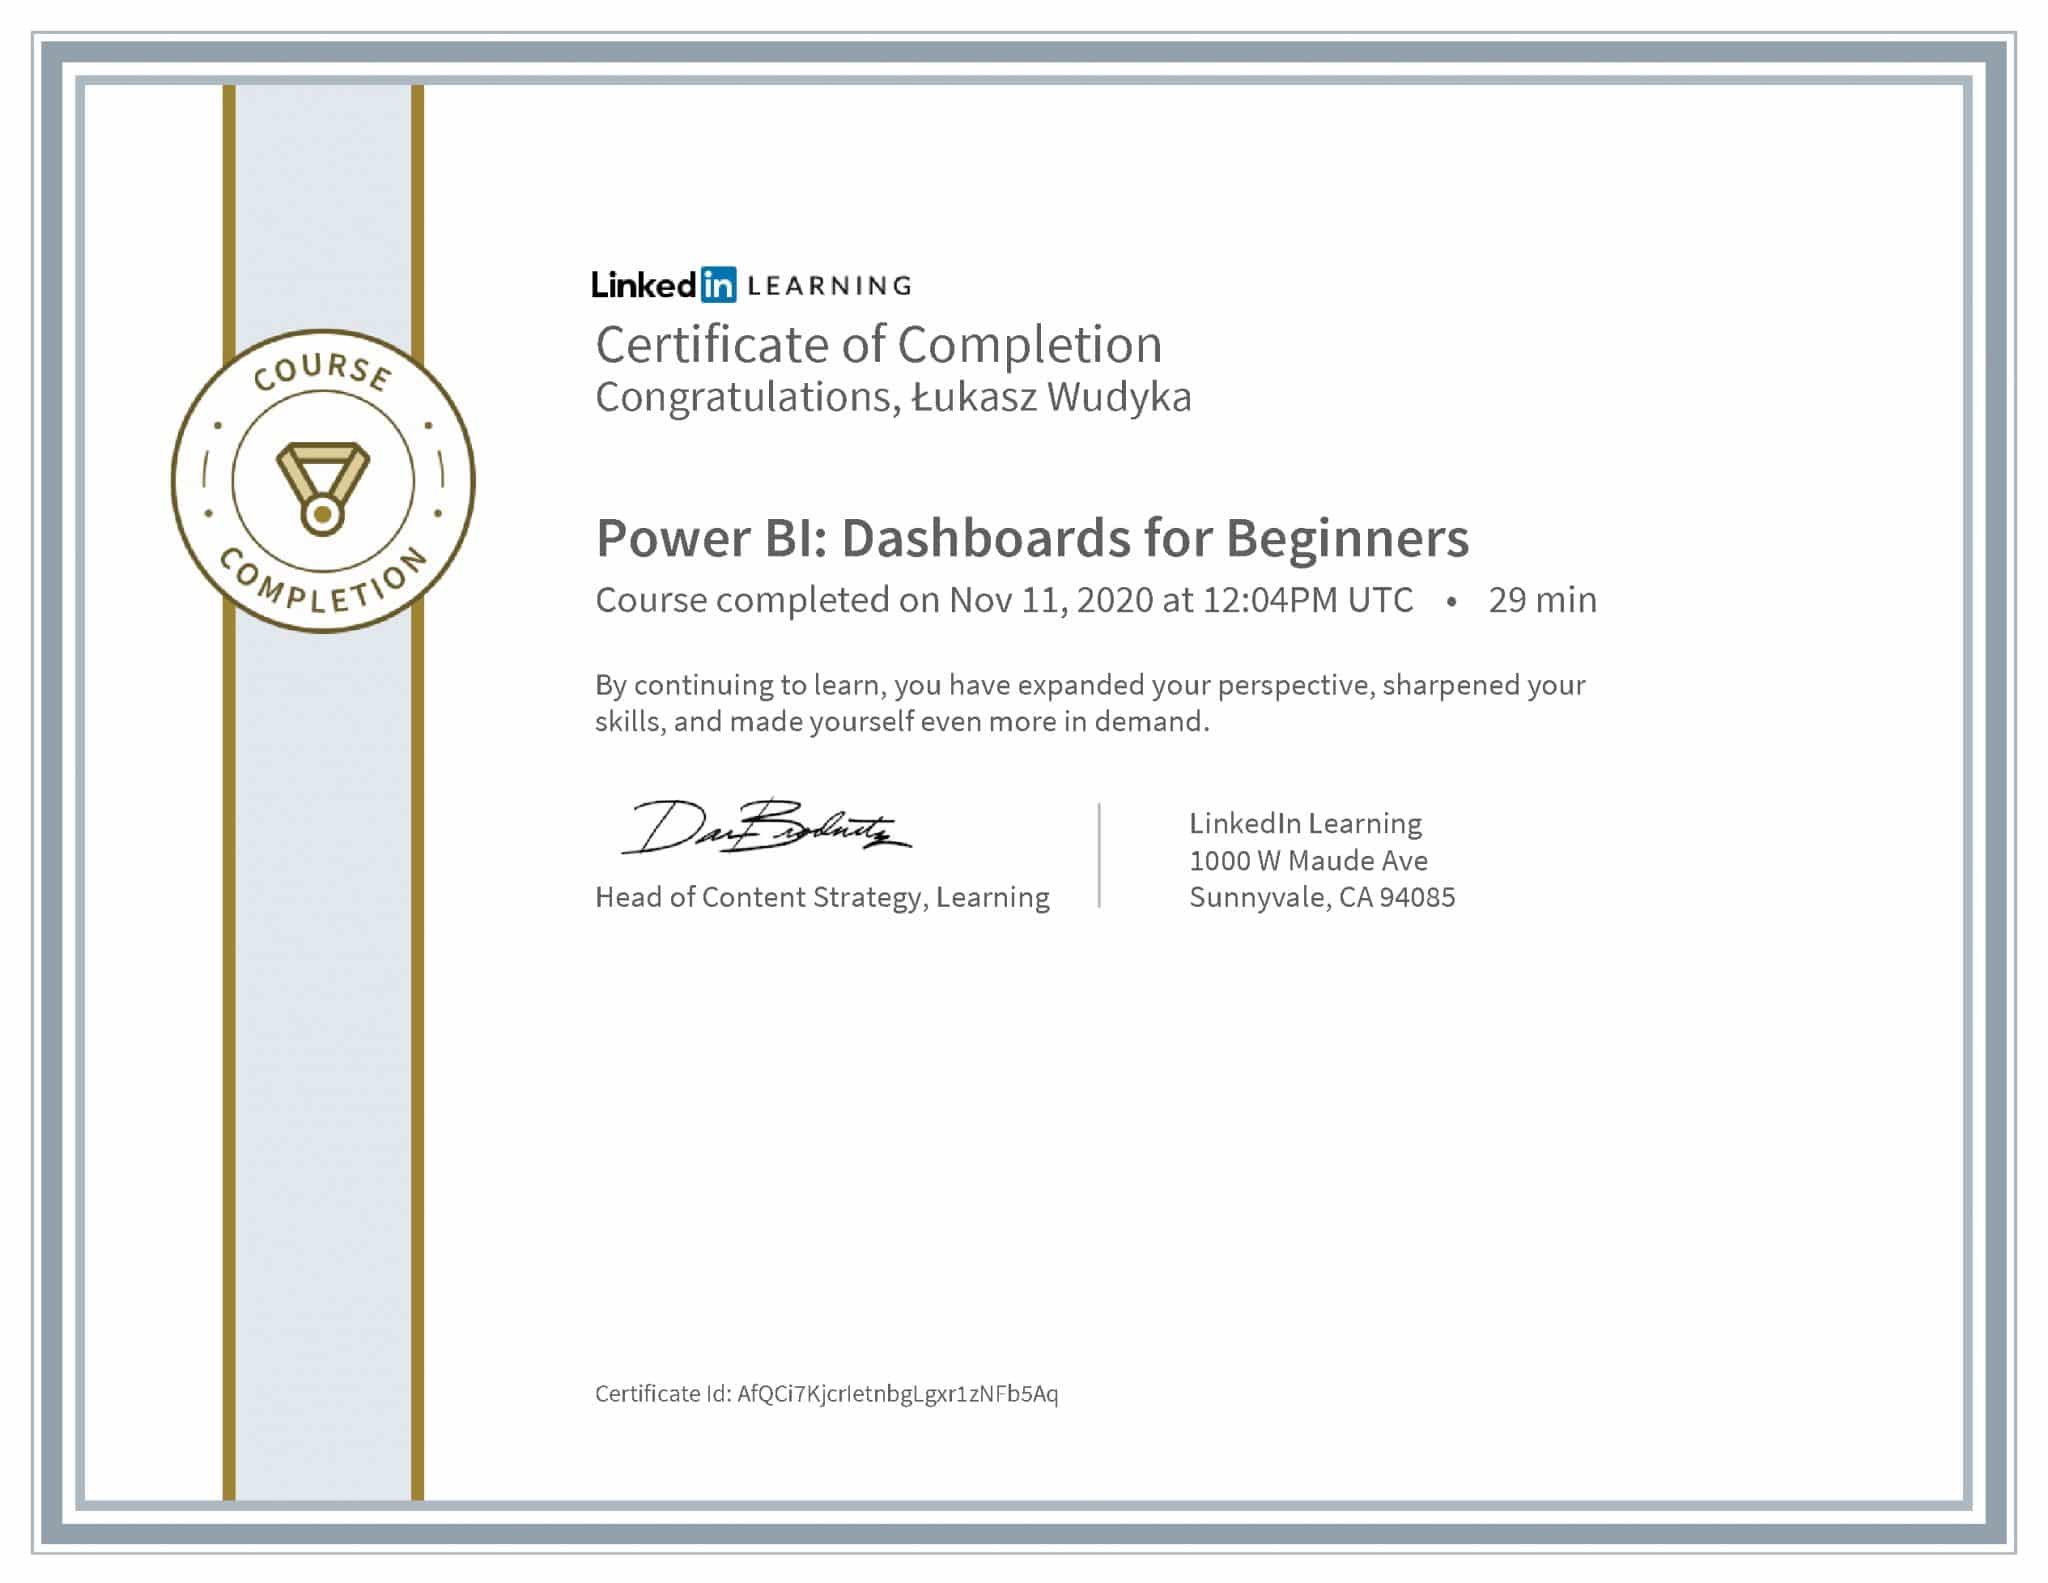 Łukasz Wudyka certyfikat LinkedIn Power BI: Dashboards for Beginners